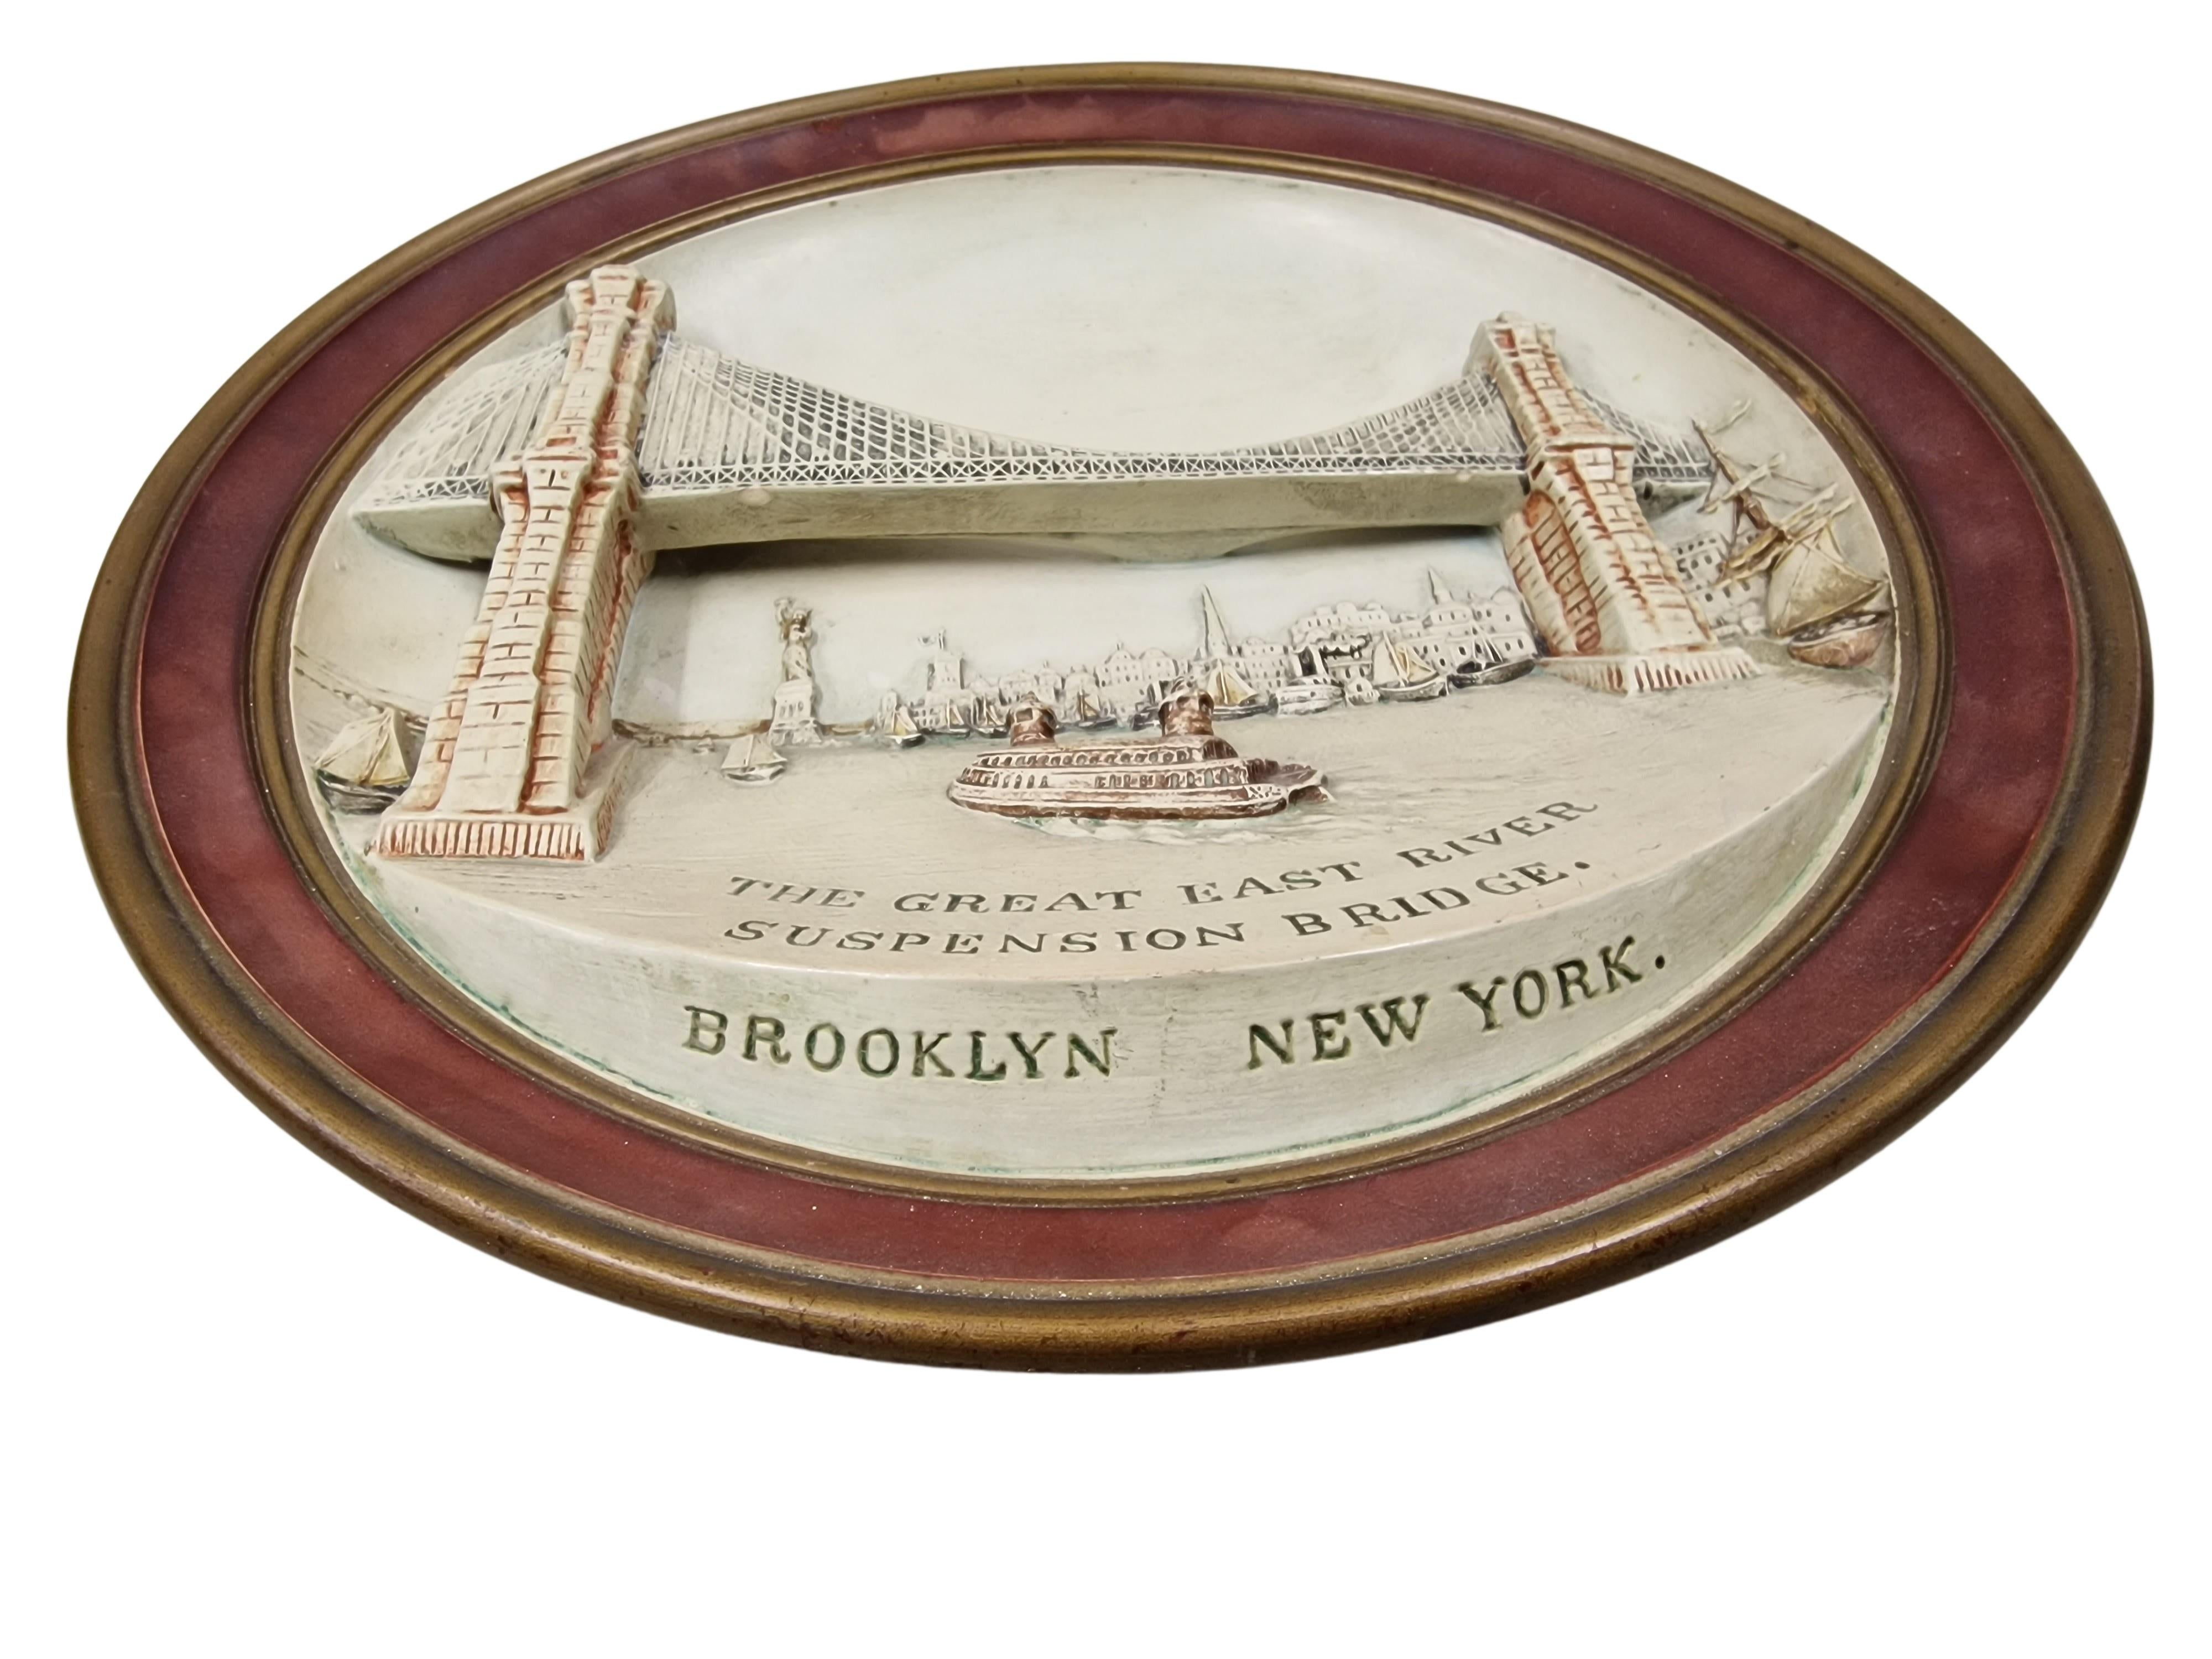 Ein Stück amerikanischer Geschichte!

Die Brooklyn Bridge wurde am 24. Mai 1883 eröffnet und war die erste feste Querung des East River. Zum Zeitpunkt ihrer Eröffnung war sie außerdem die längste Hängebrücke der Welt. Ursprünglich hieß die Brücke